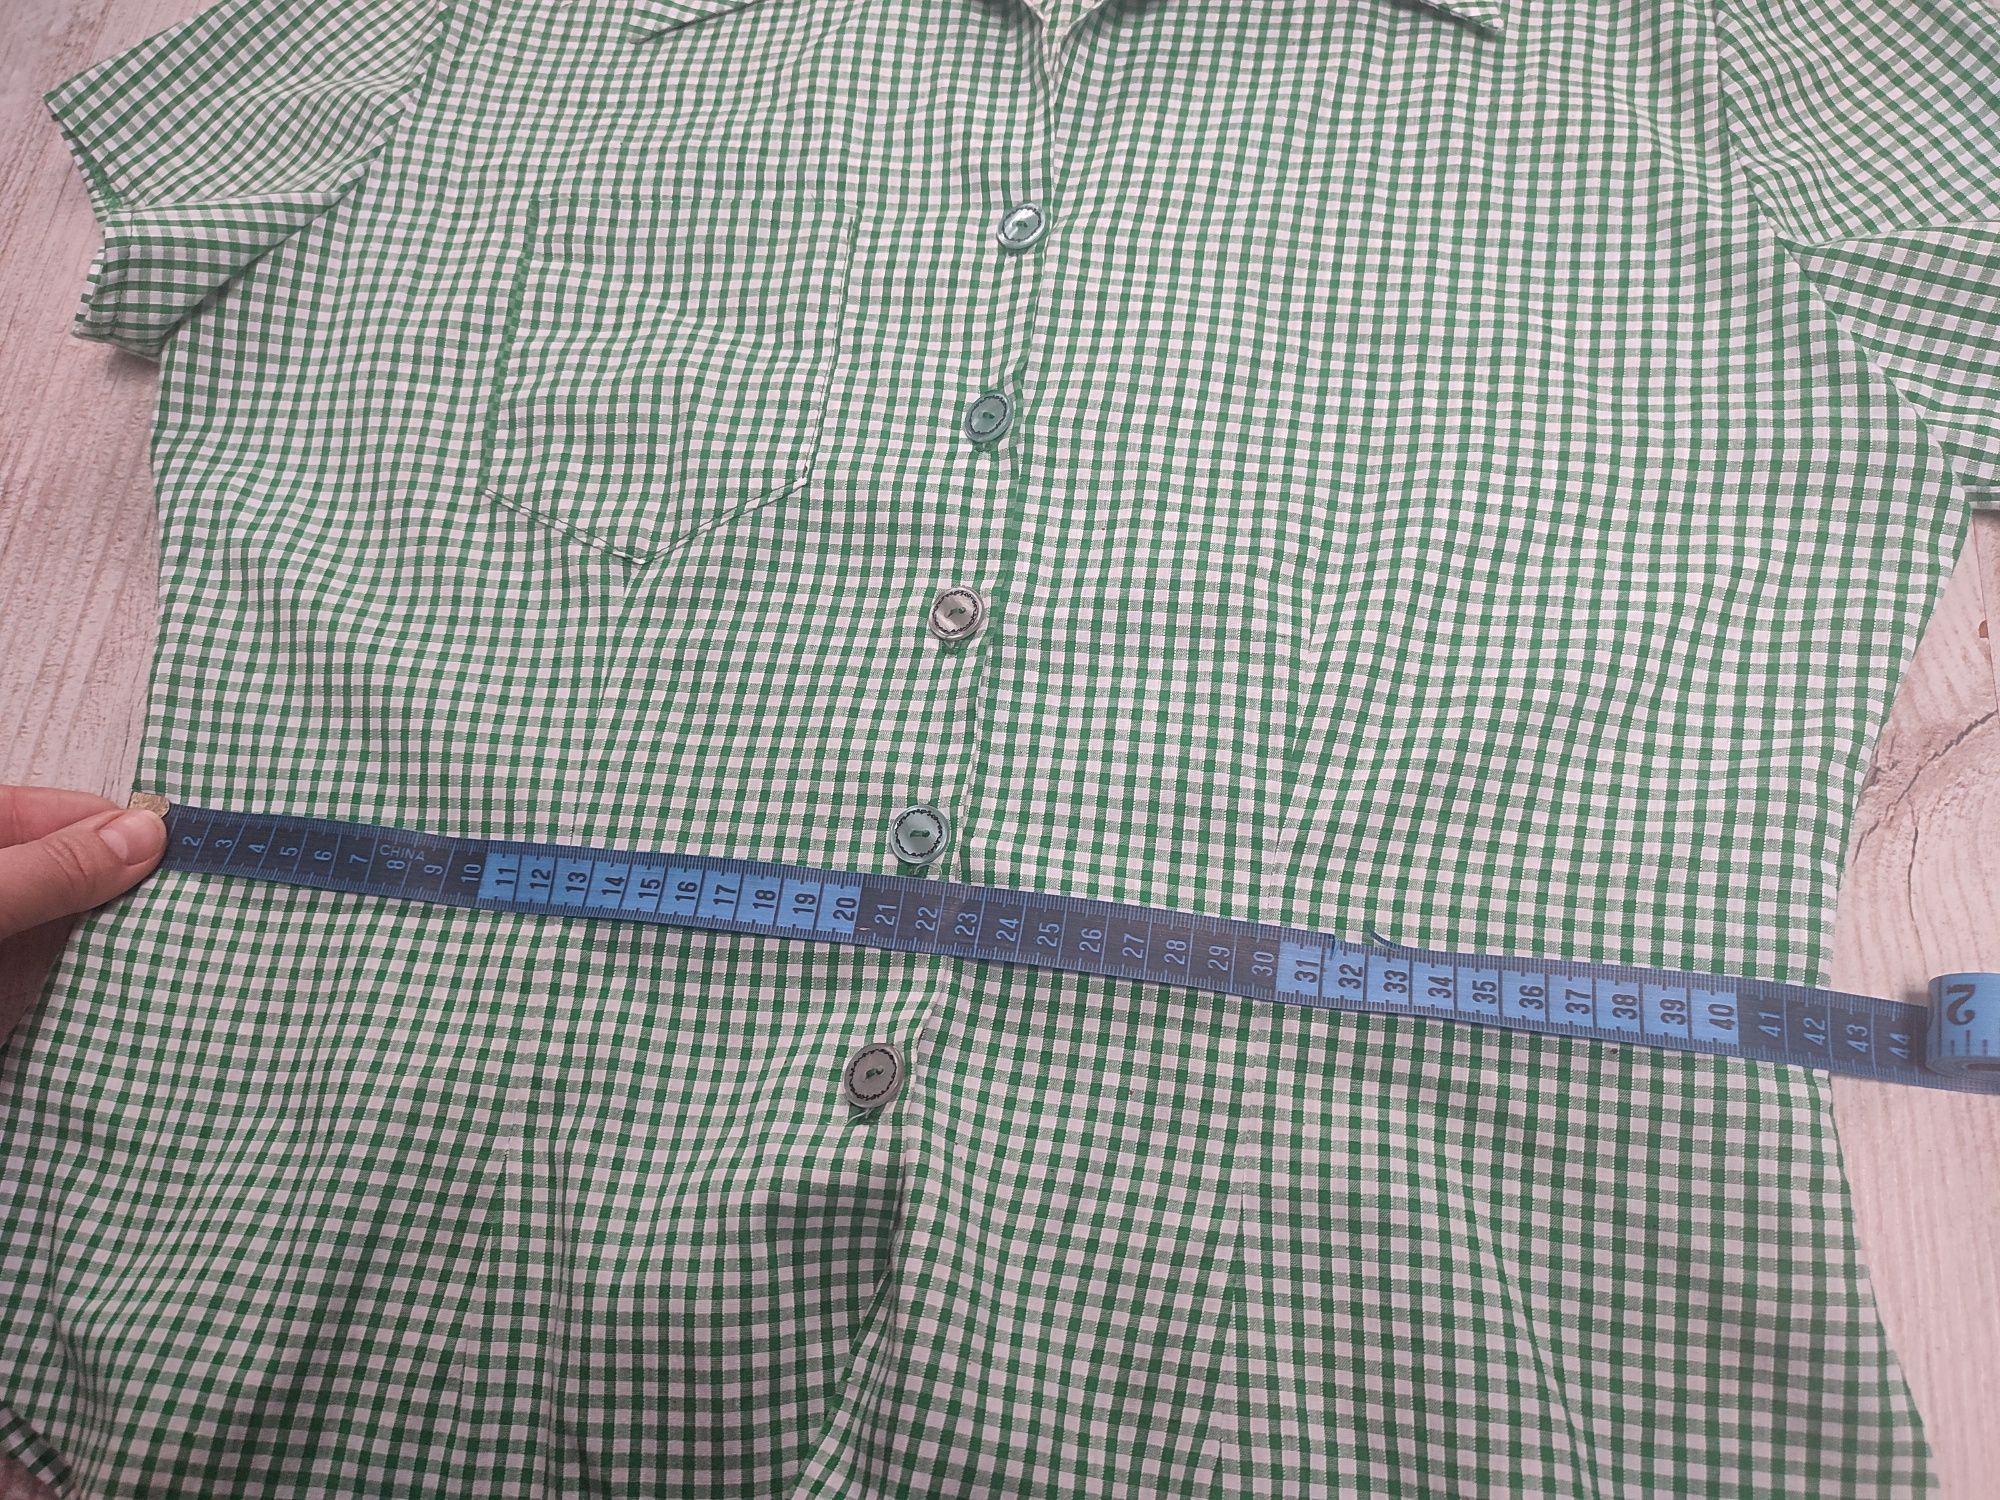 Koszula damska 40 L taliowana krótki rękaw w kratkę wiosna lato